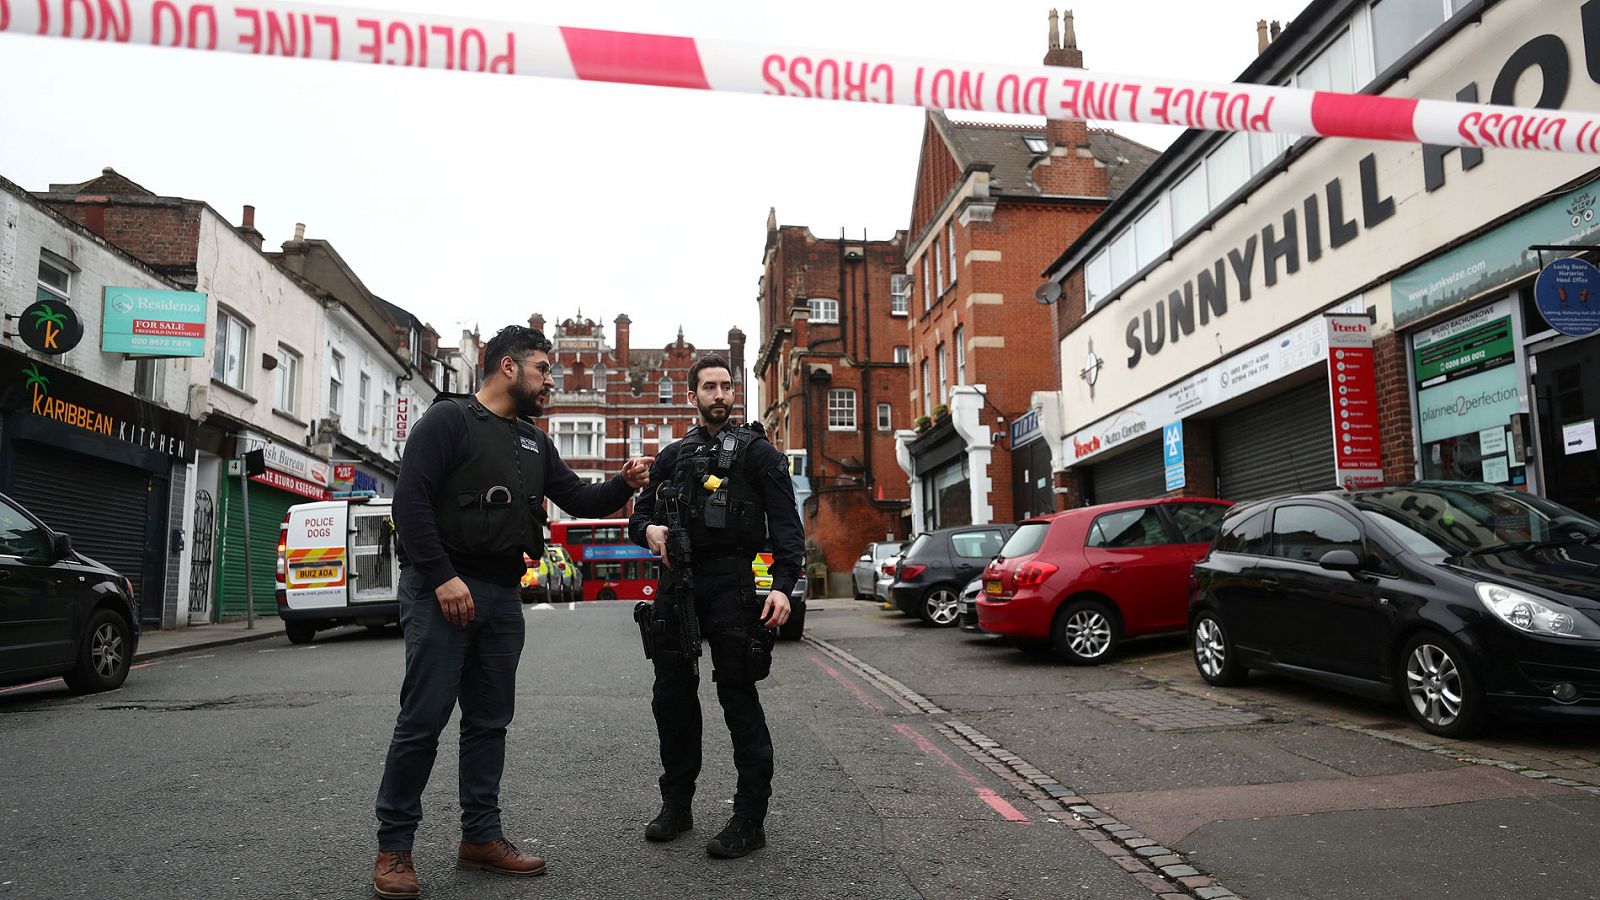 Atentado en Londres | La Policía mata a un hombre tras un apuñalamiento múltiple - RTVE.es